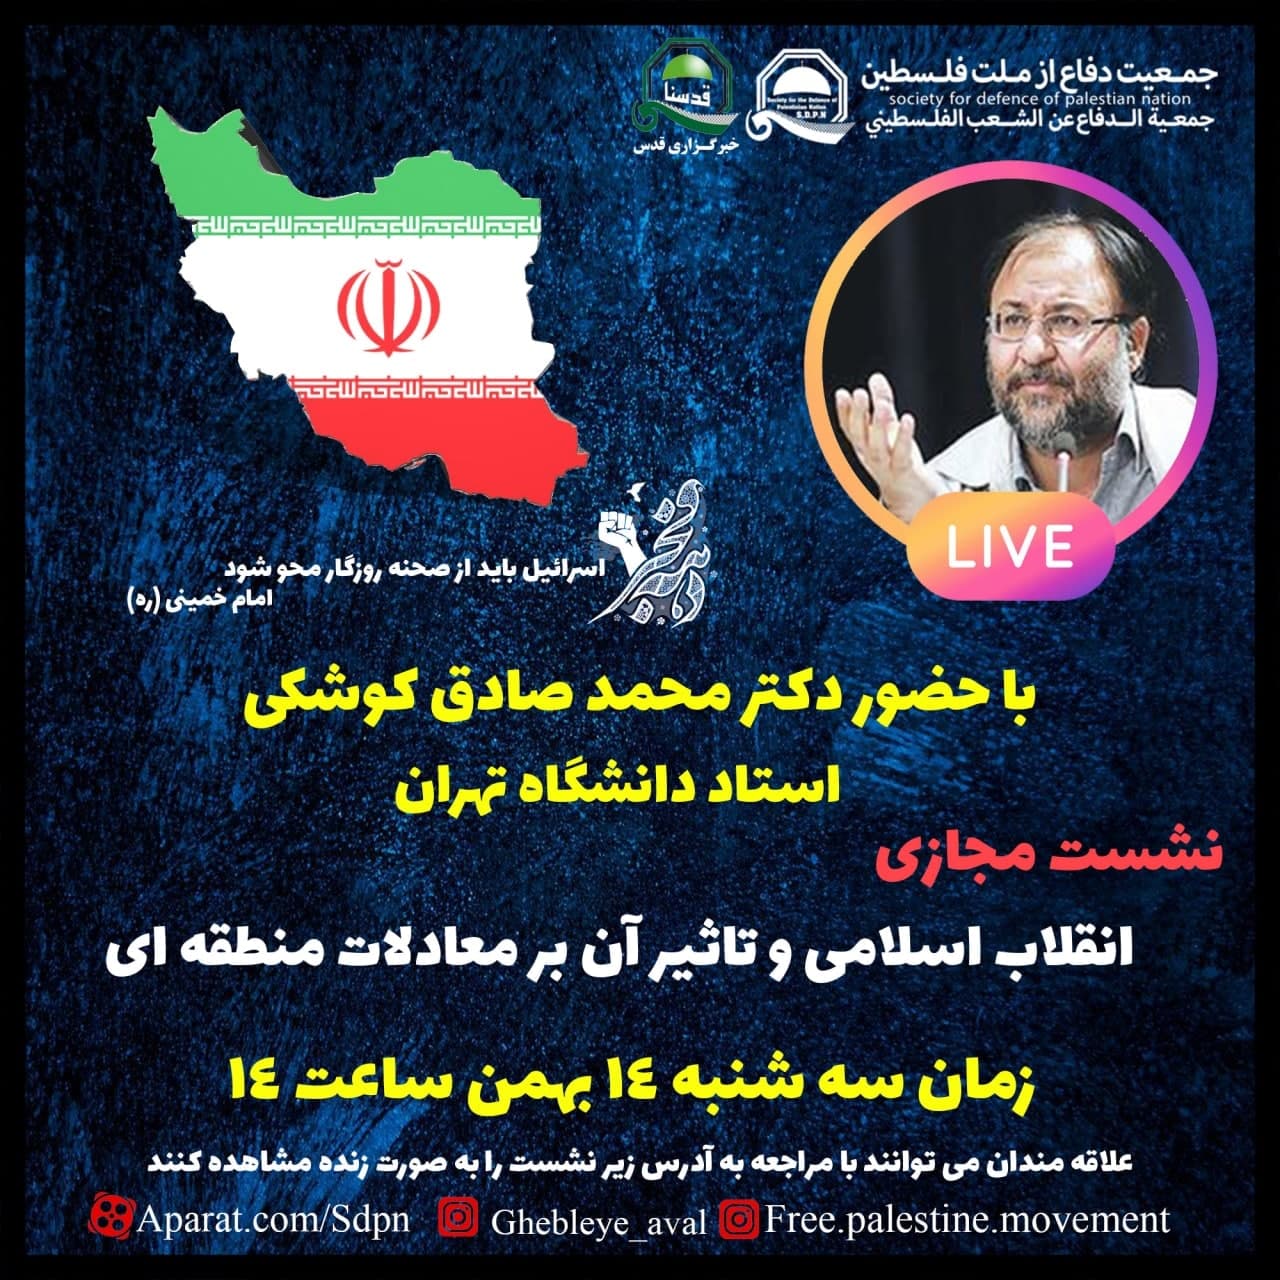 سه شنبه برگزار می شود؛نشست مجازی «انقلاب اسلامی و تاثیر آن بر معادلات منطقه ای» با سخنرانی دکتر کوشکی 2